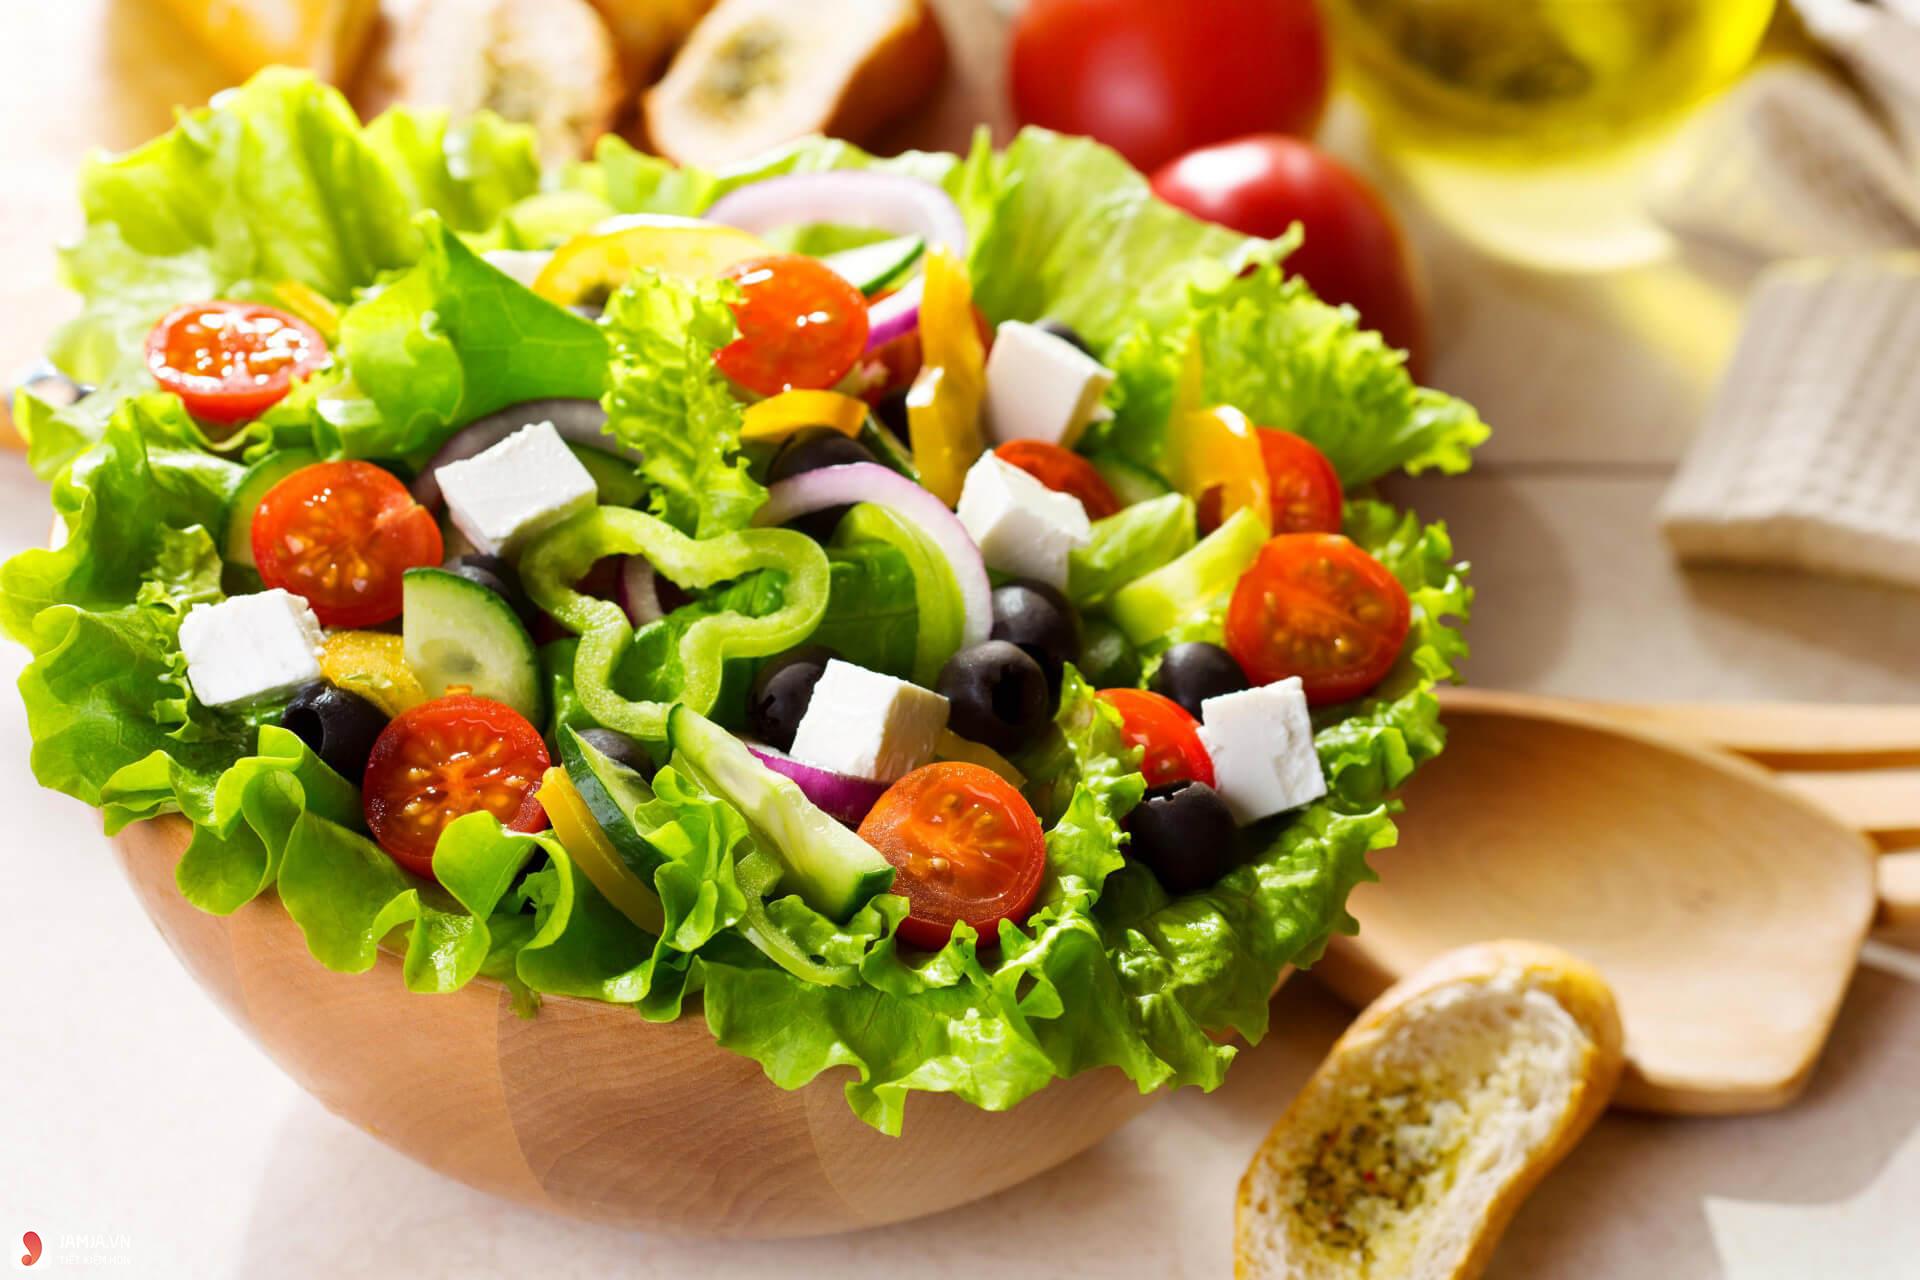 Làm thế nào để sốt chanh dây trộn salad không bị đắng, chua quá mức?
